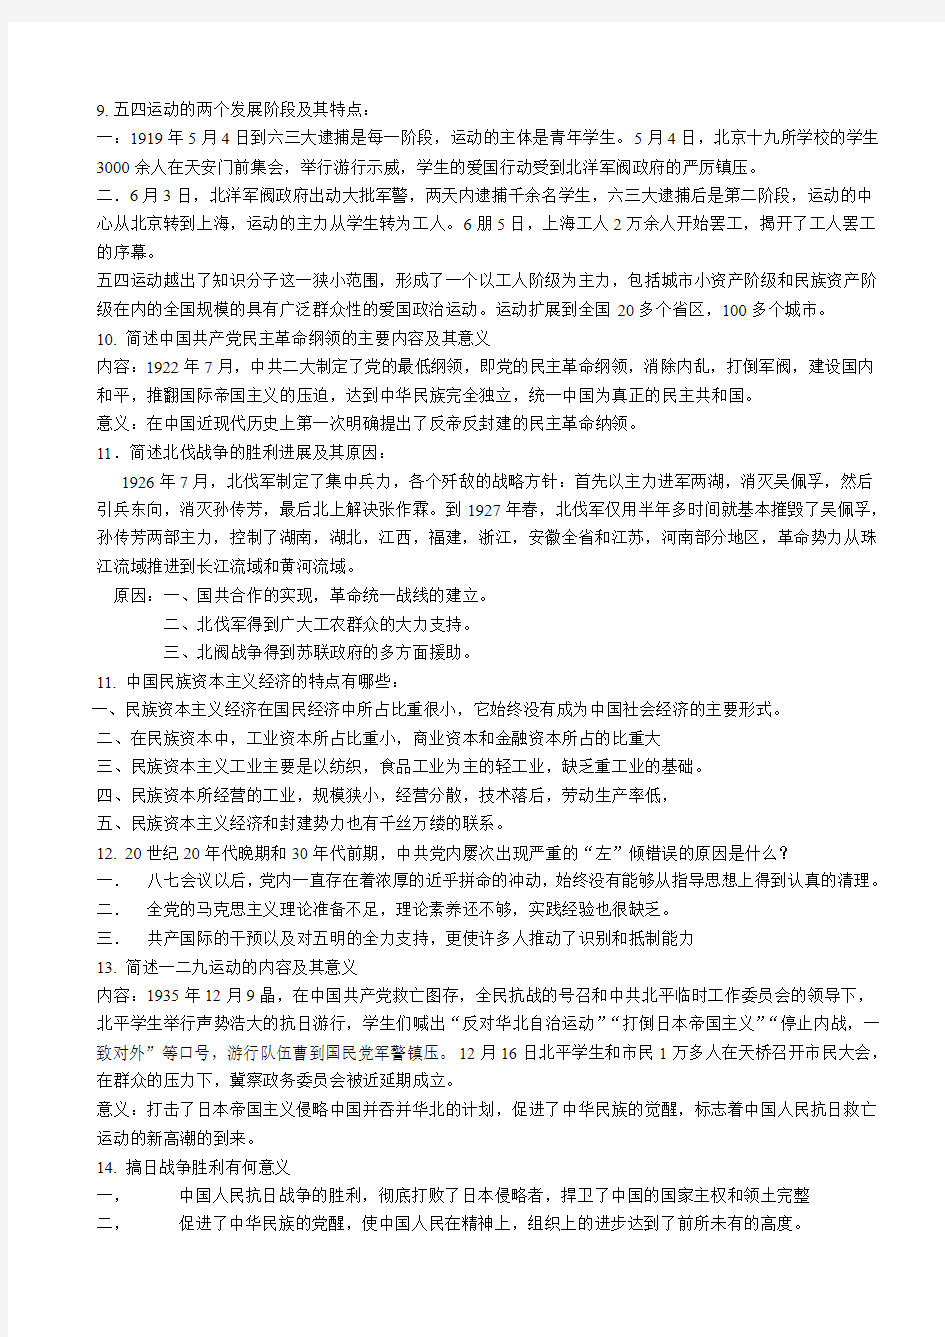 2014年自考《中国近现代史纲要》复习资料(完整版)